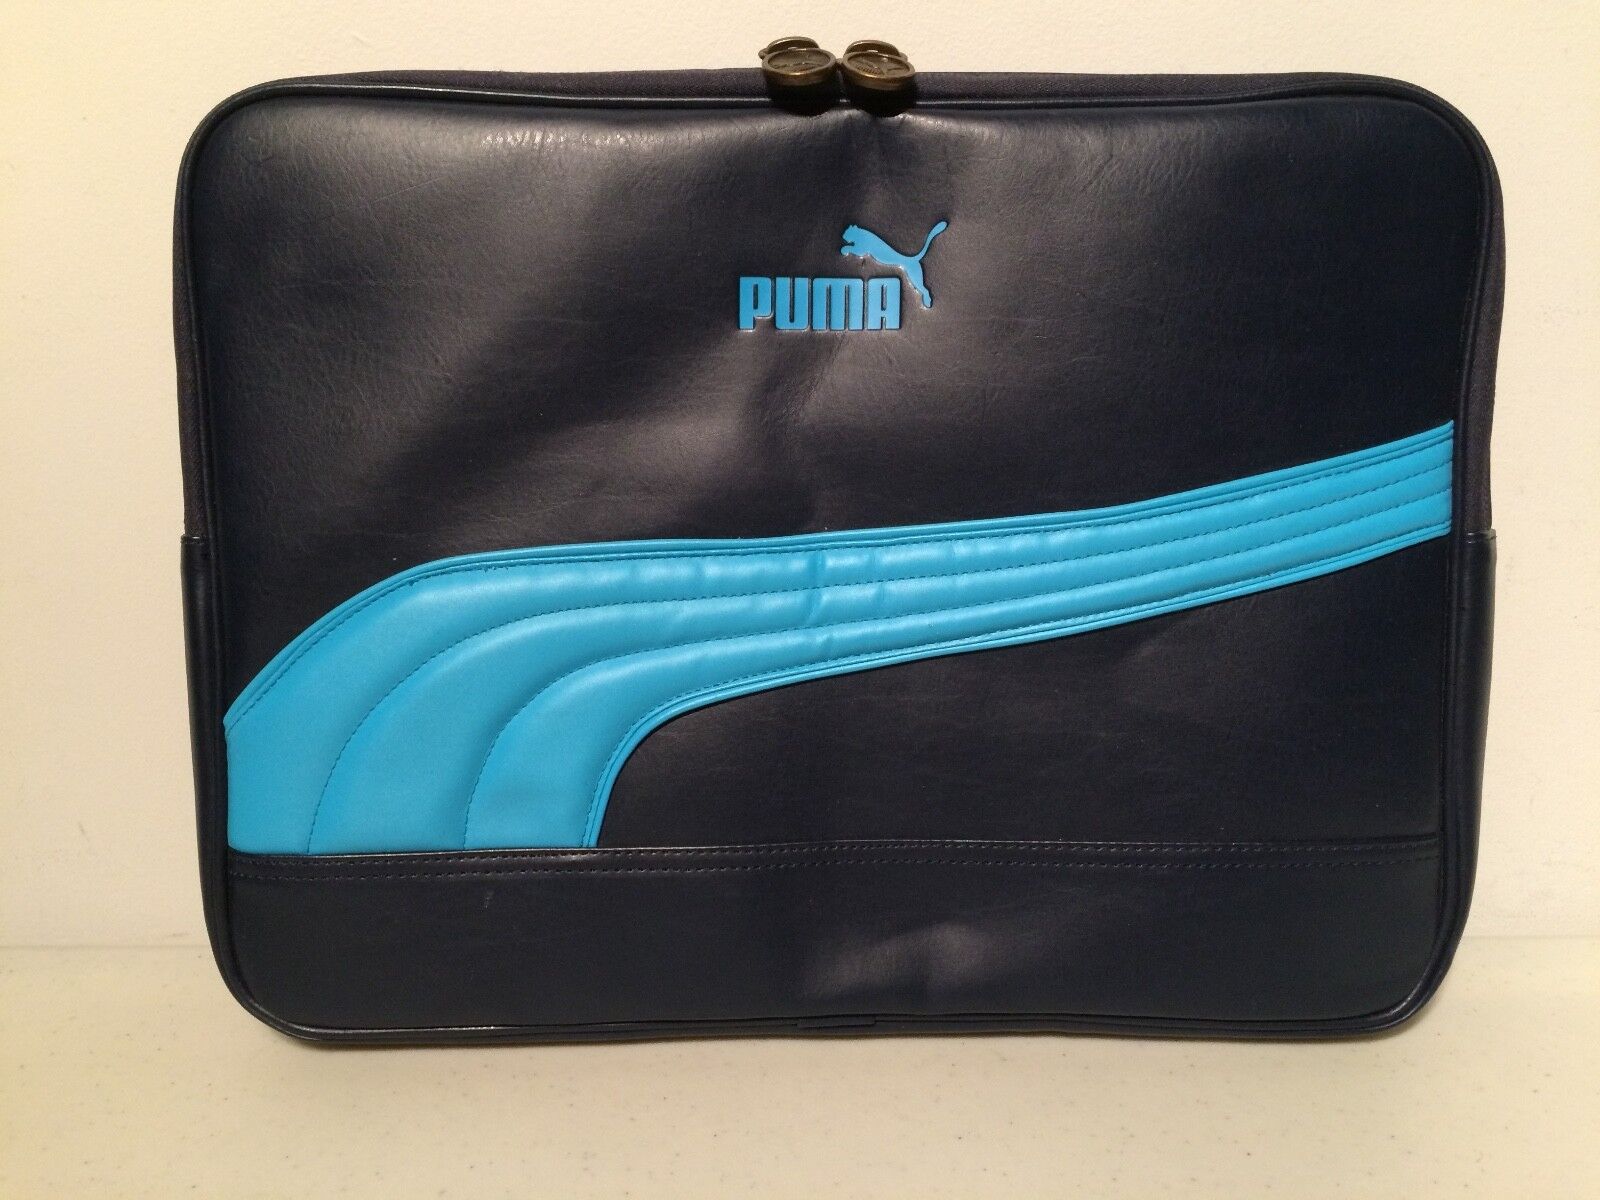 Puma Laptop MacBook Portfolio Blue Bag Carrying Case Gym Coach Reporter Athlete